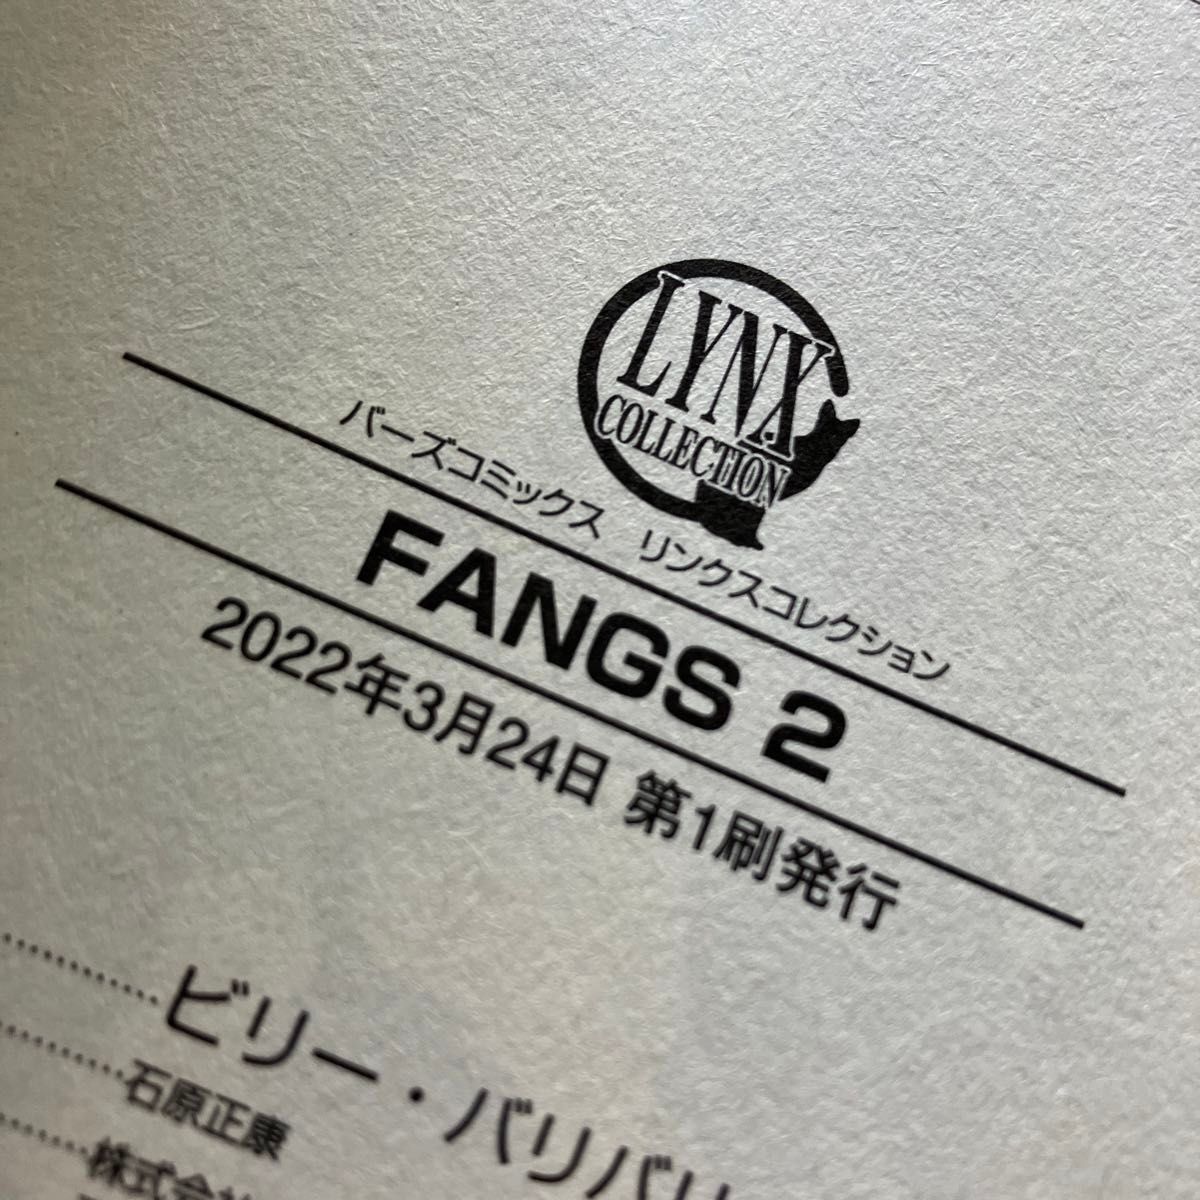 【未読初版本】ビリー・バリバリー「FANGS 」2、3巻セット